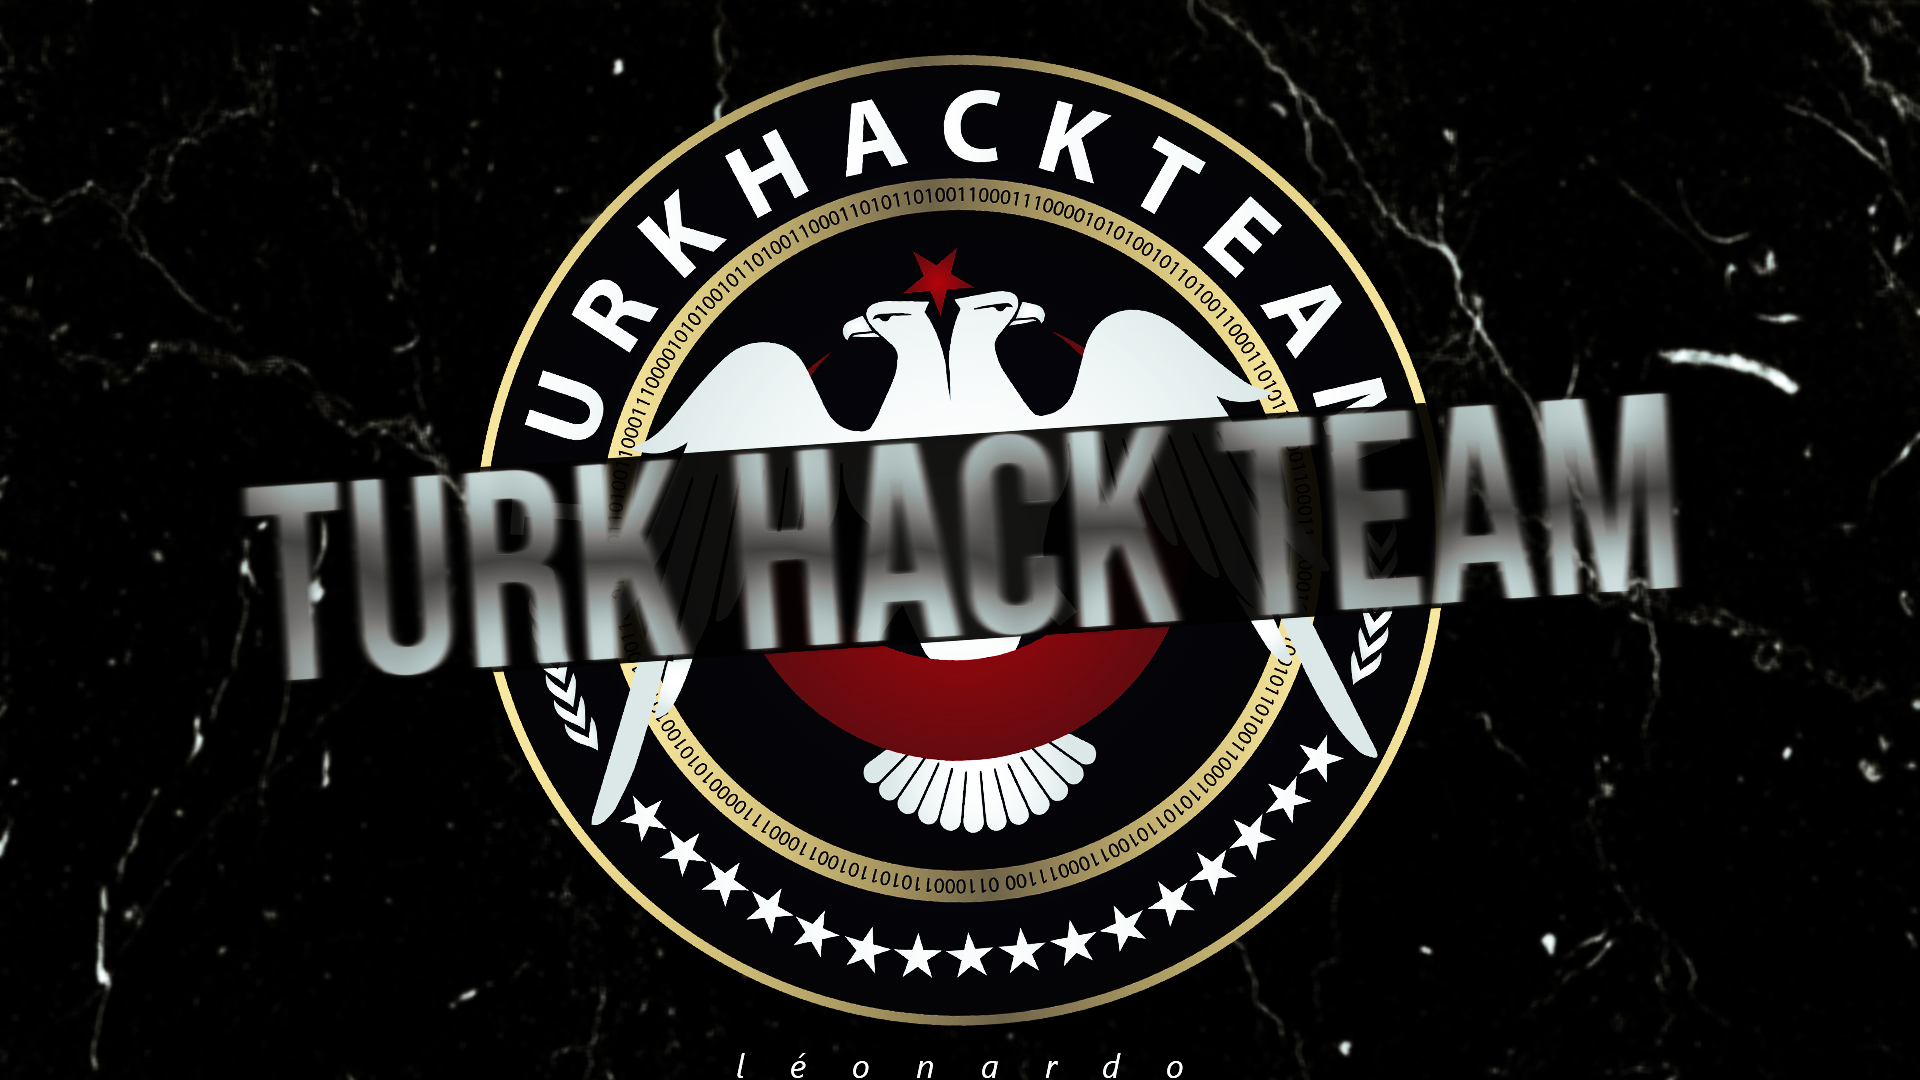 Turk Hack Team Wallpapers